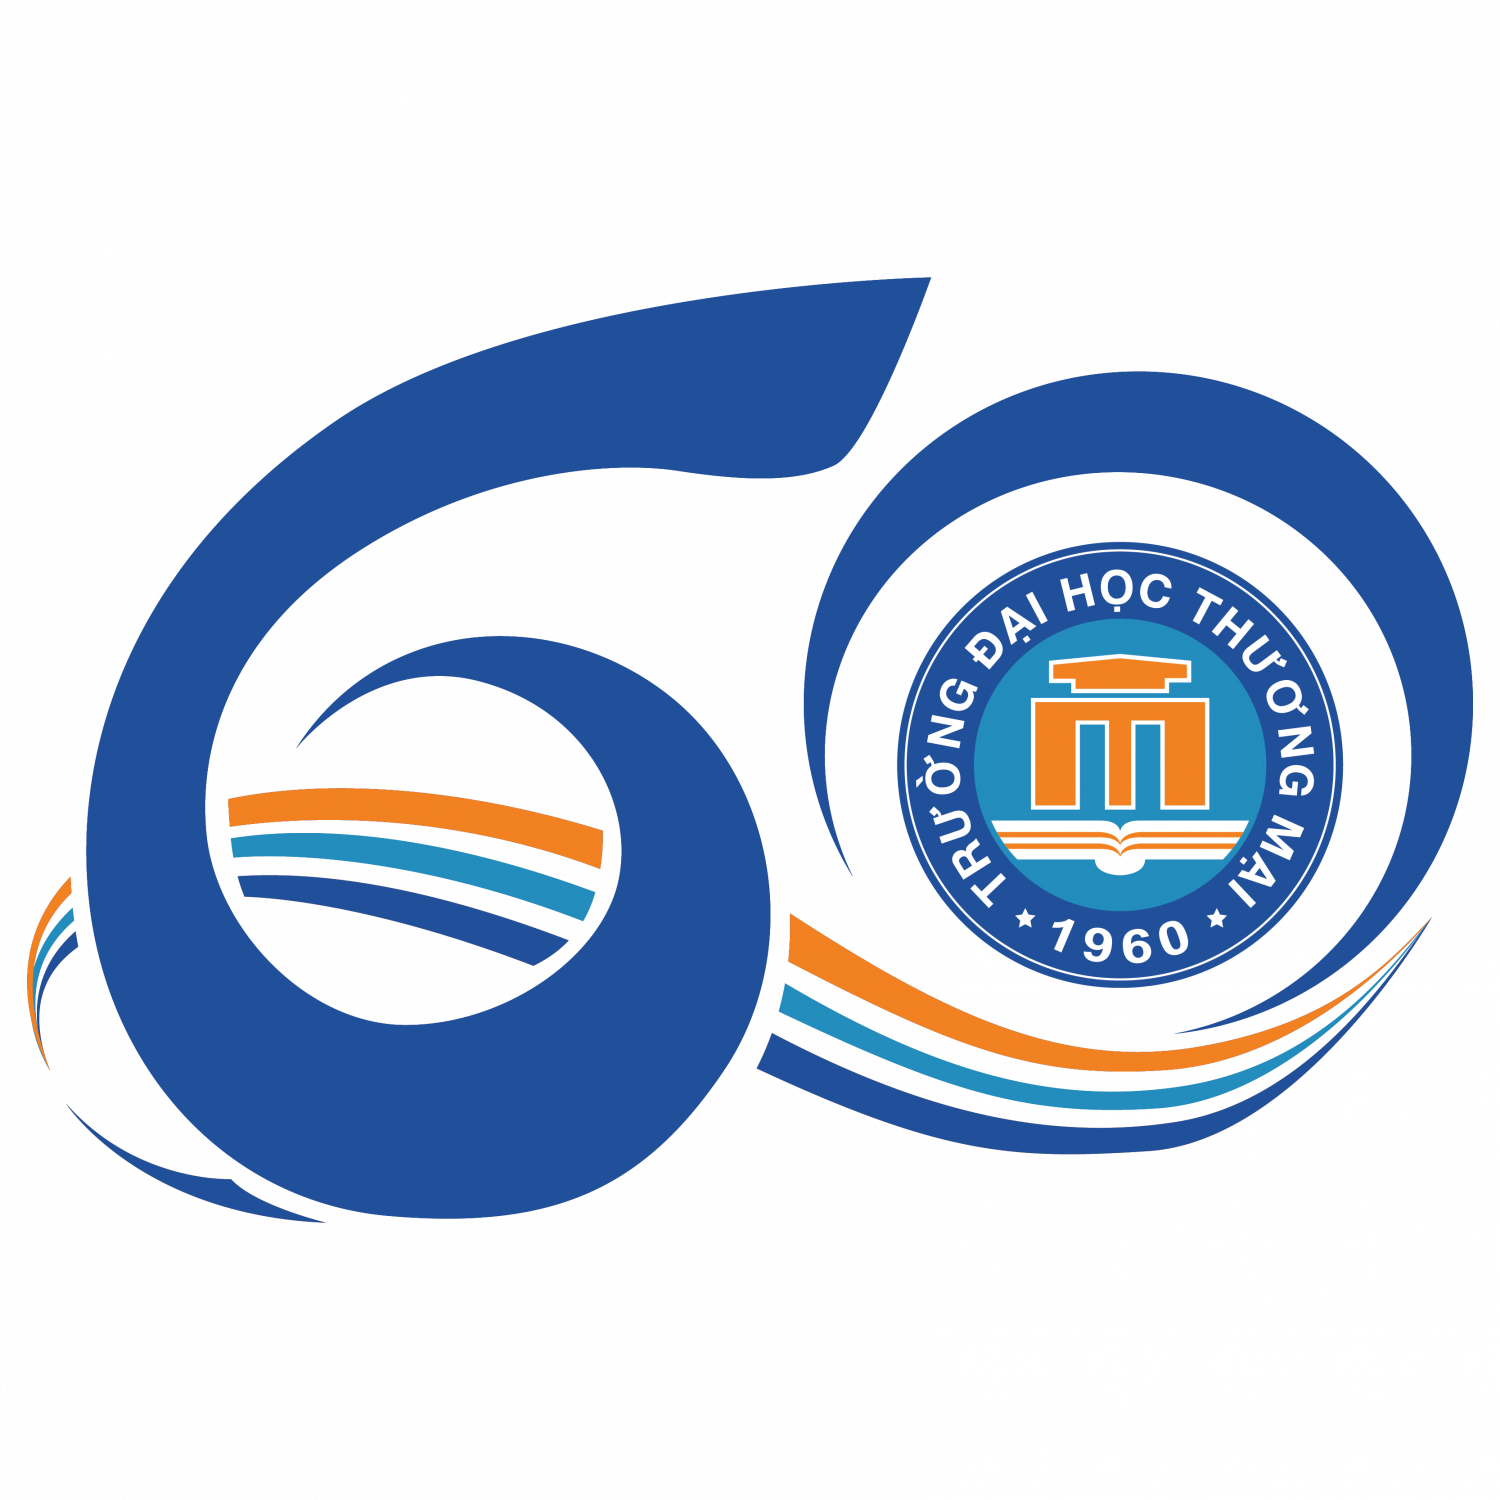 Thư mời viết bài Hội thảo Khoa học Quốc gia với chủ đề: “Tác động của đại dịch COVID – 19 tới thương mại và đầu tư ở Việt Nam”